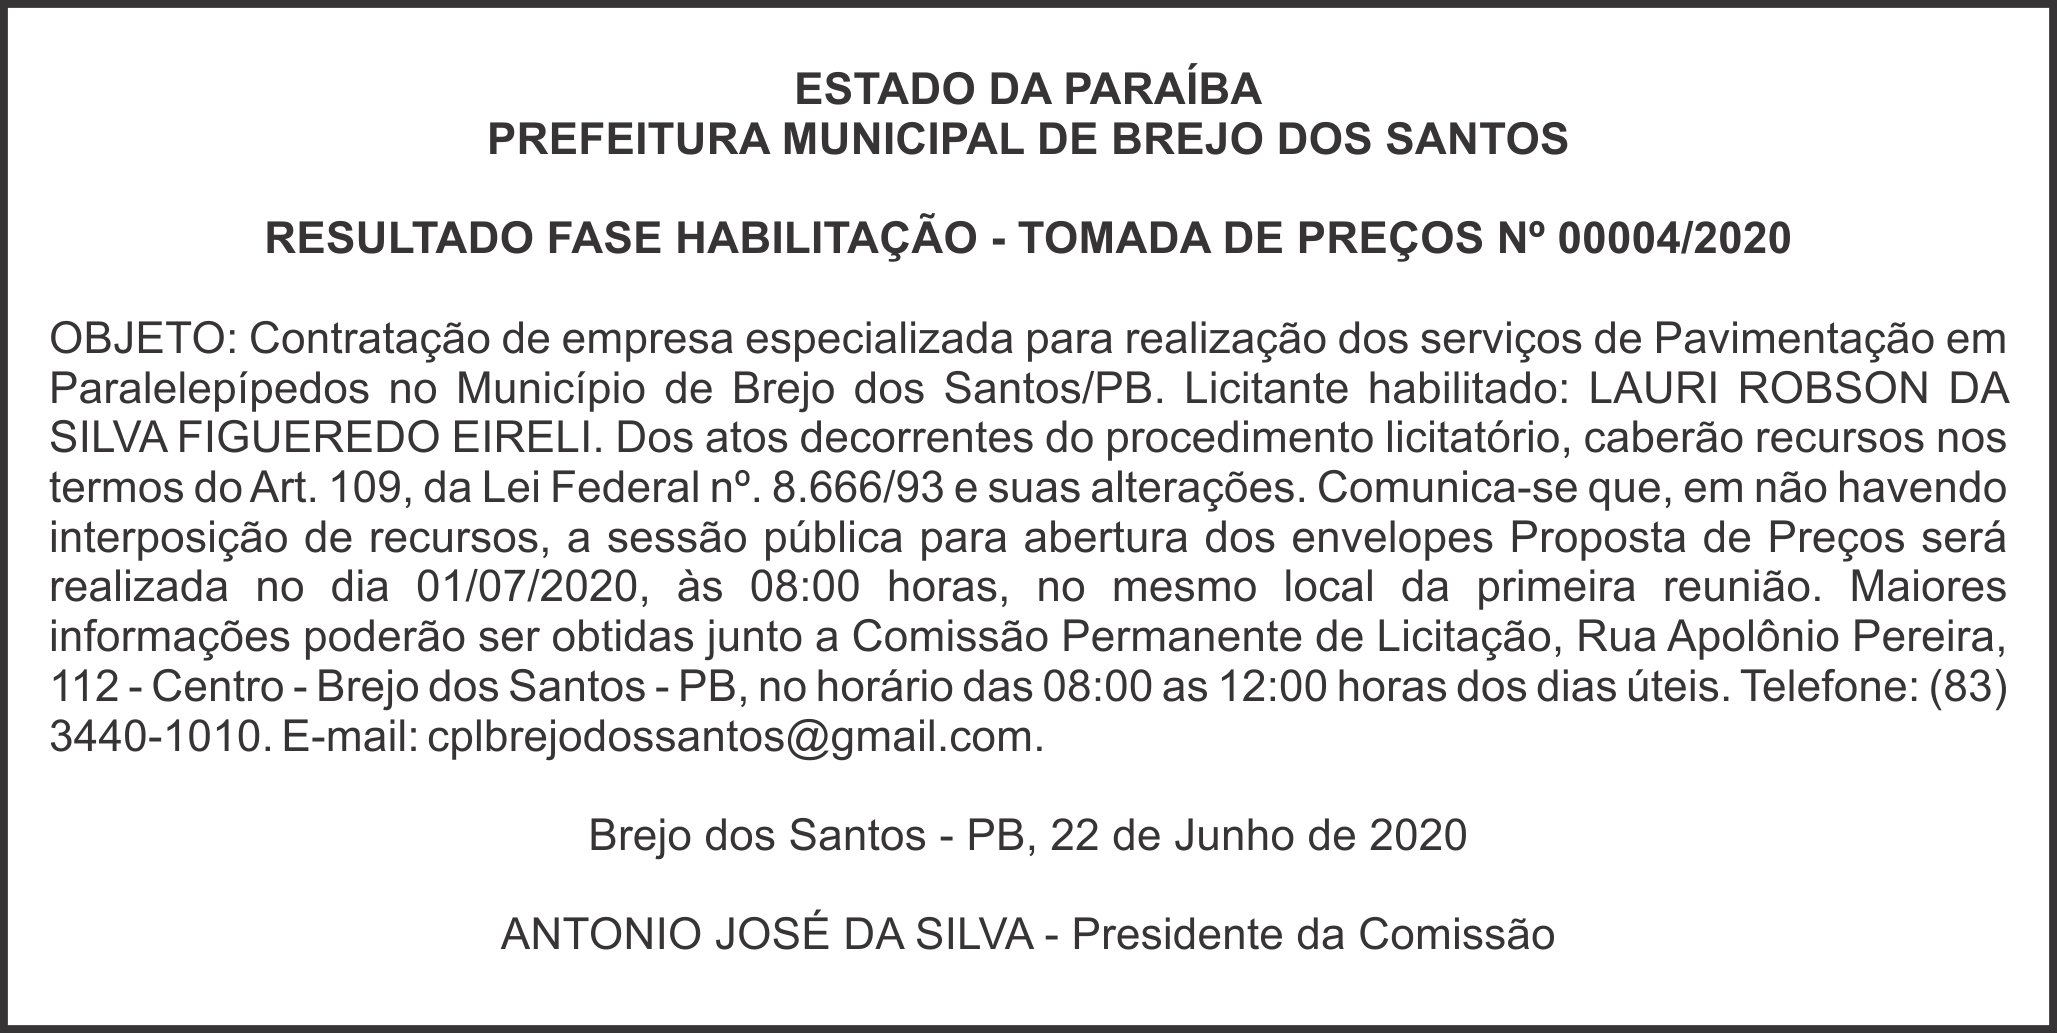 PREFEITURA MUNICIPAL DE BREJO DOS SANTOS – RESULTADO FASE HABILITAÇÃO – TOMADA DE PREÇOS Nº 00004/2020